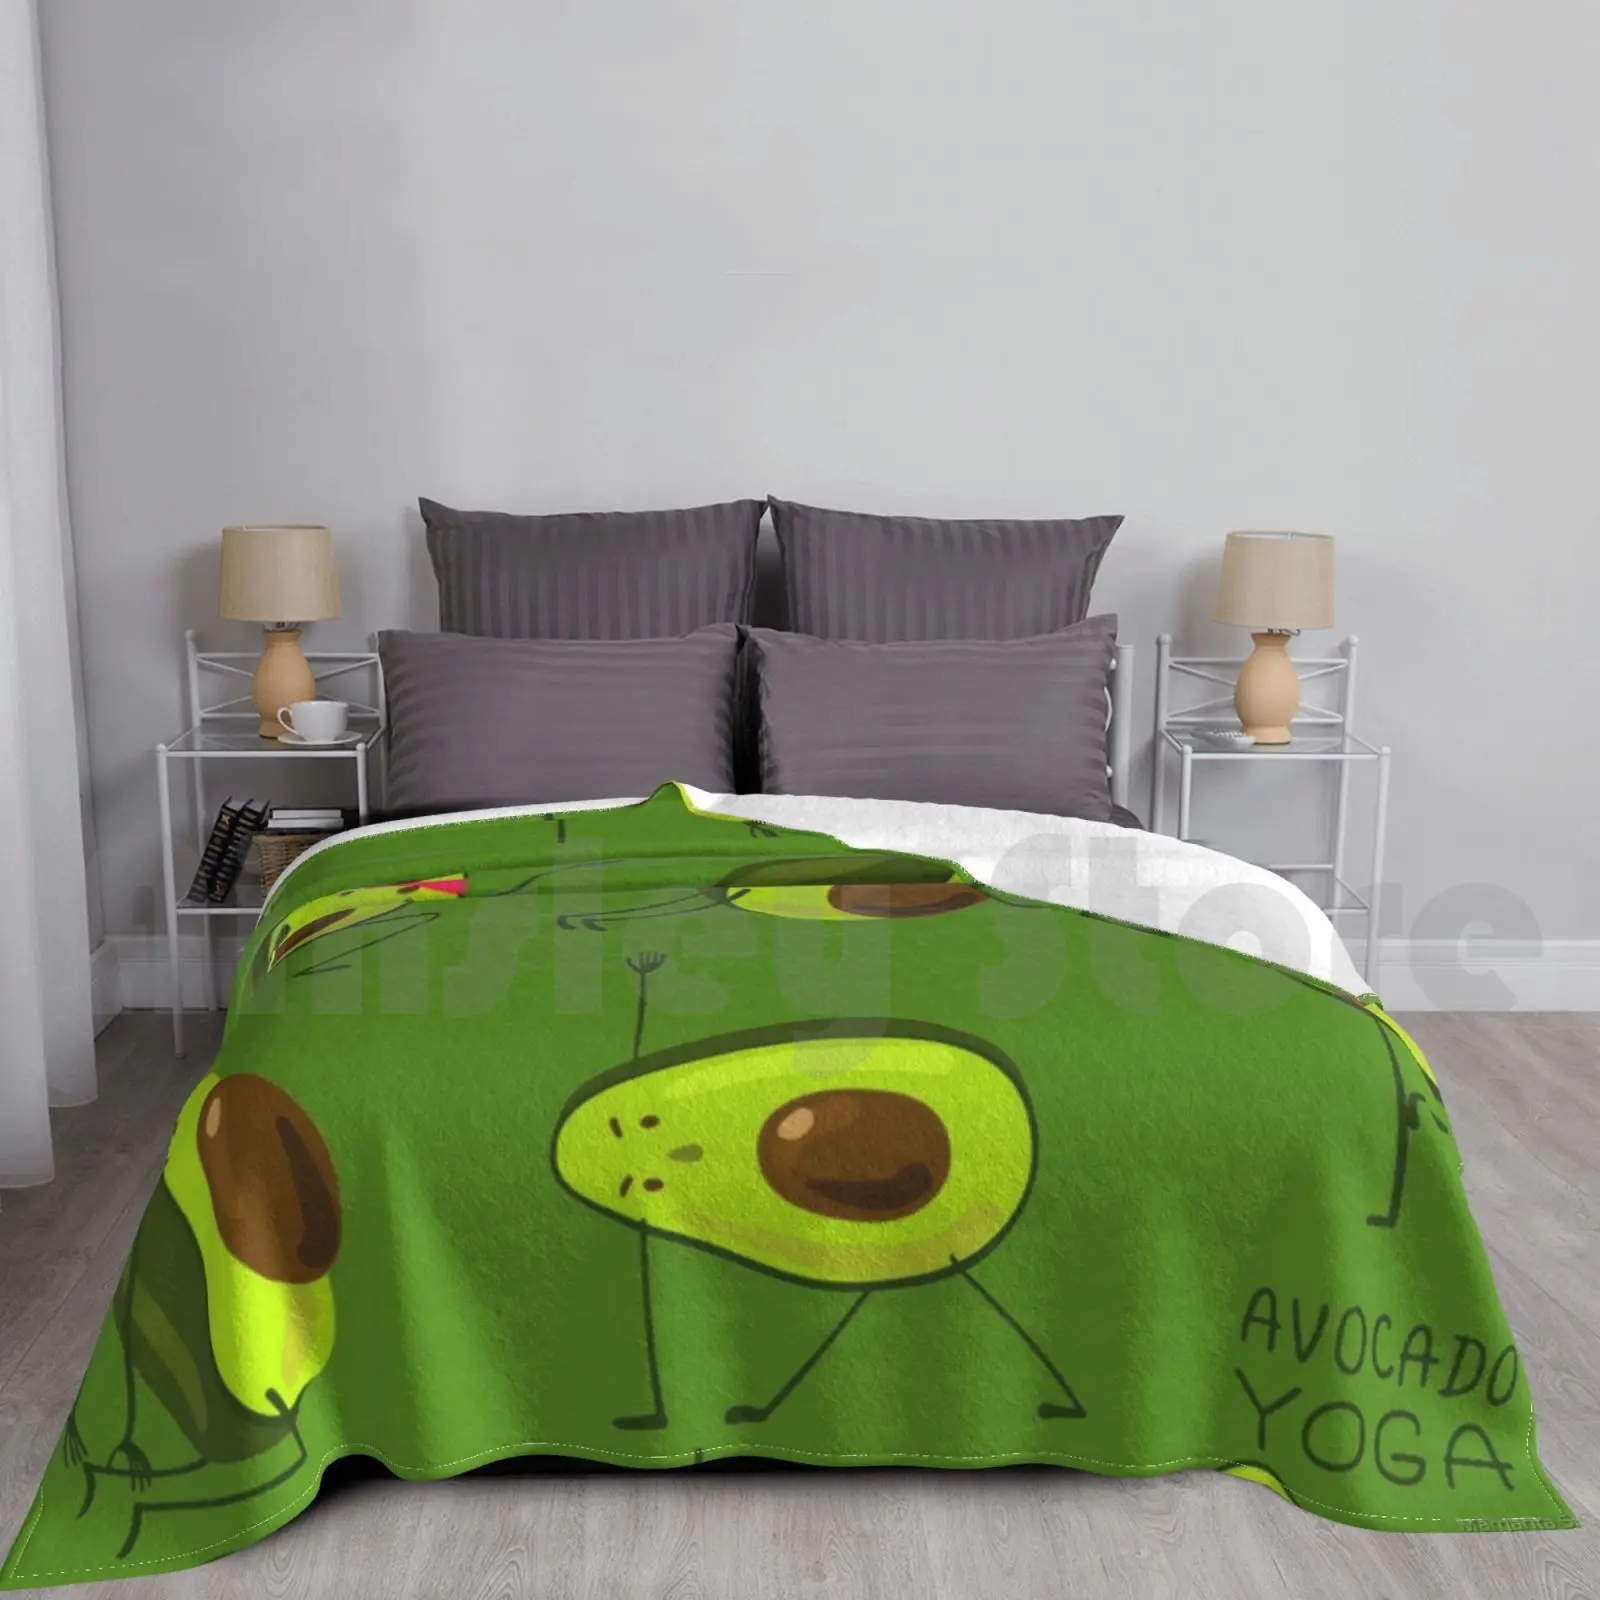 

Одеяло для йоги с авокадо, модное одеяло для йоги с авокадо на заказ, спортивный образ жизни, зеленый мультяшный авокадо, Йога, авокадо